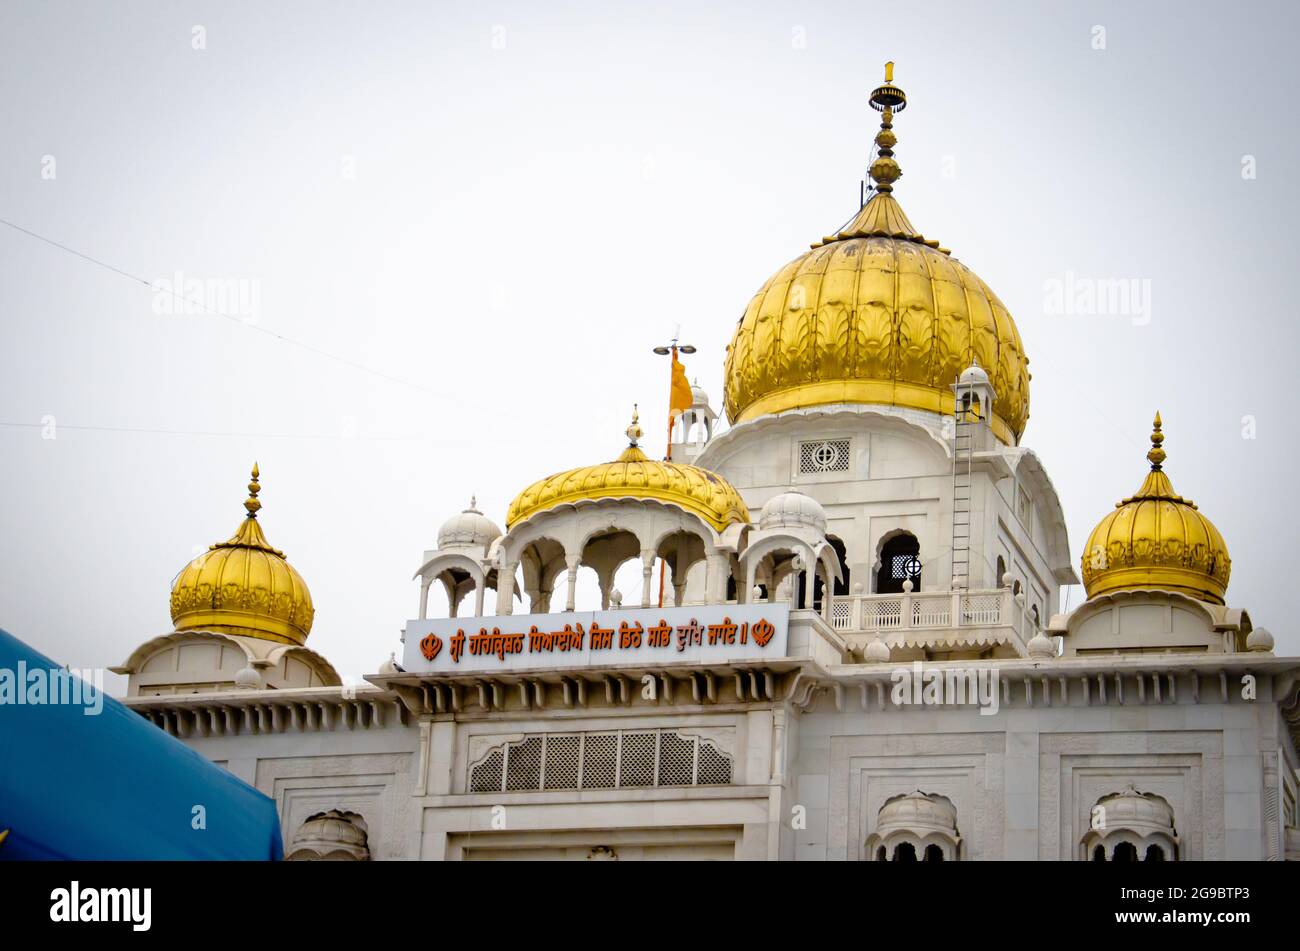 Religious place for Sikhs Bangla Sahib Gurudwara Stock Photo